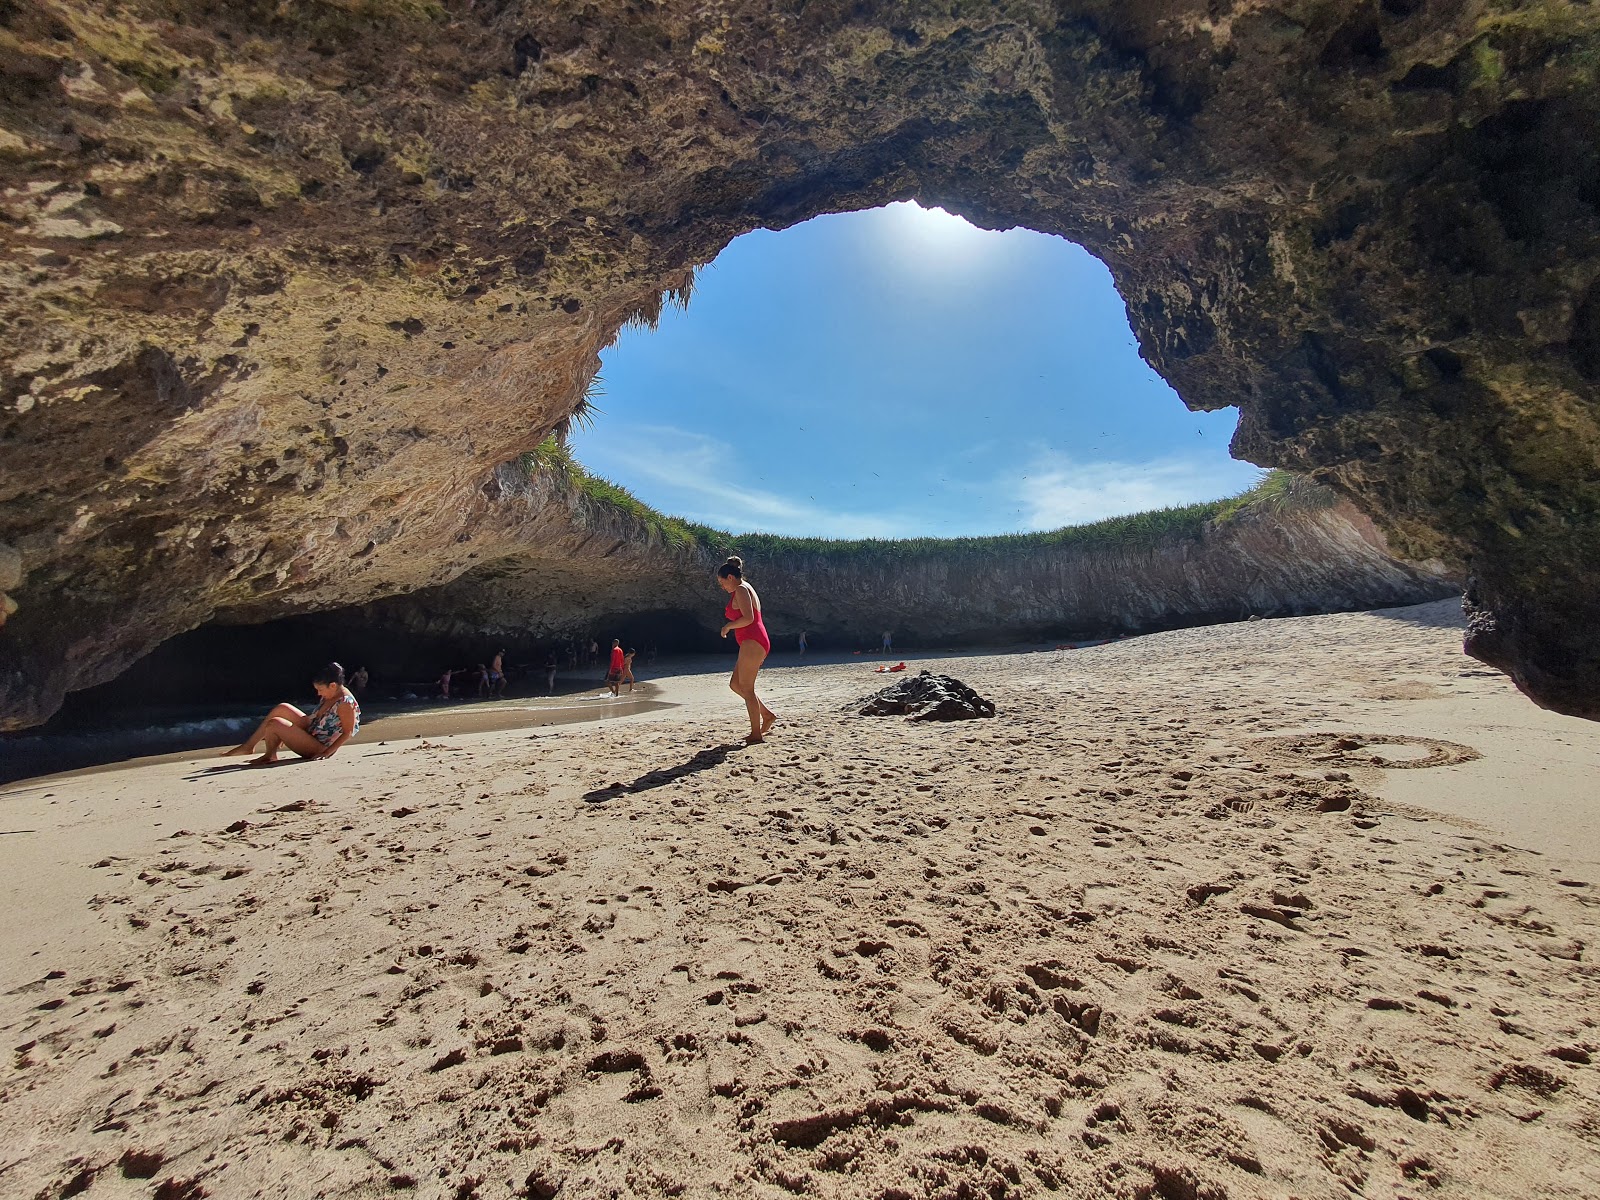 Valokuva Playa del Amor (Hidden beach)ista. sijaitsee luonnonalueella